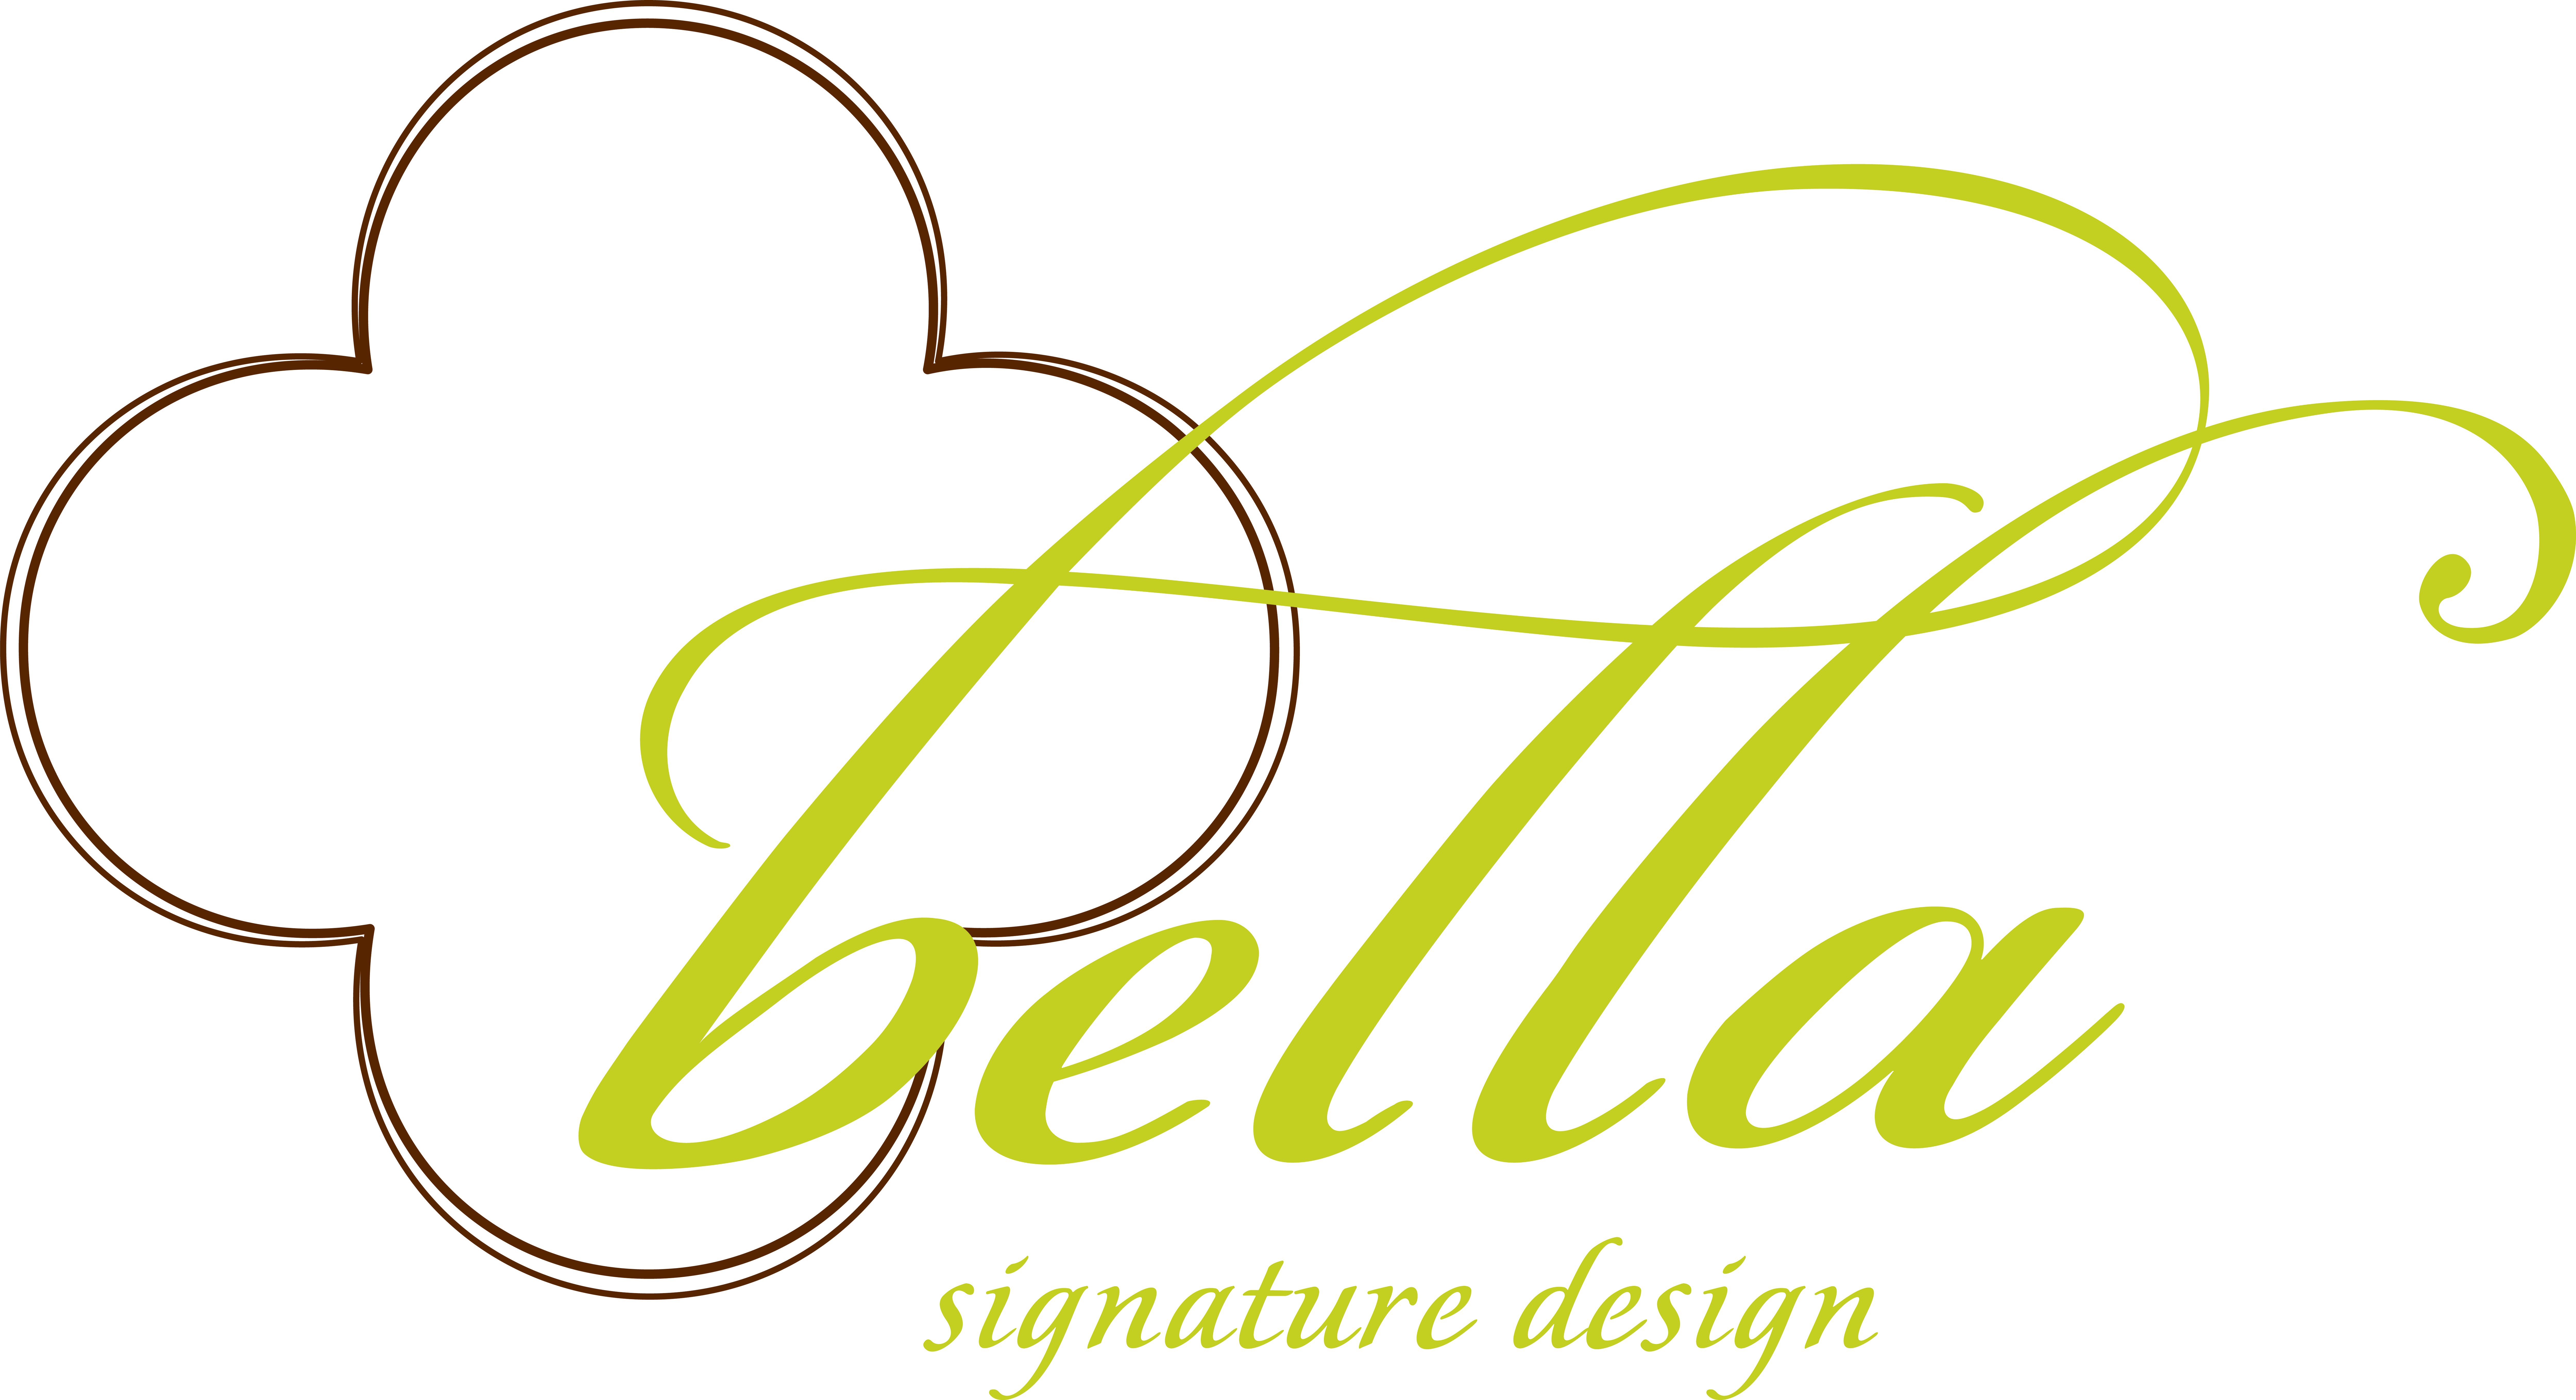 signature design name